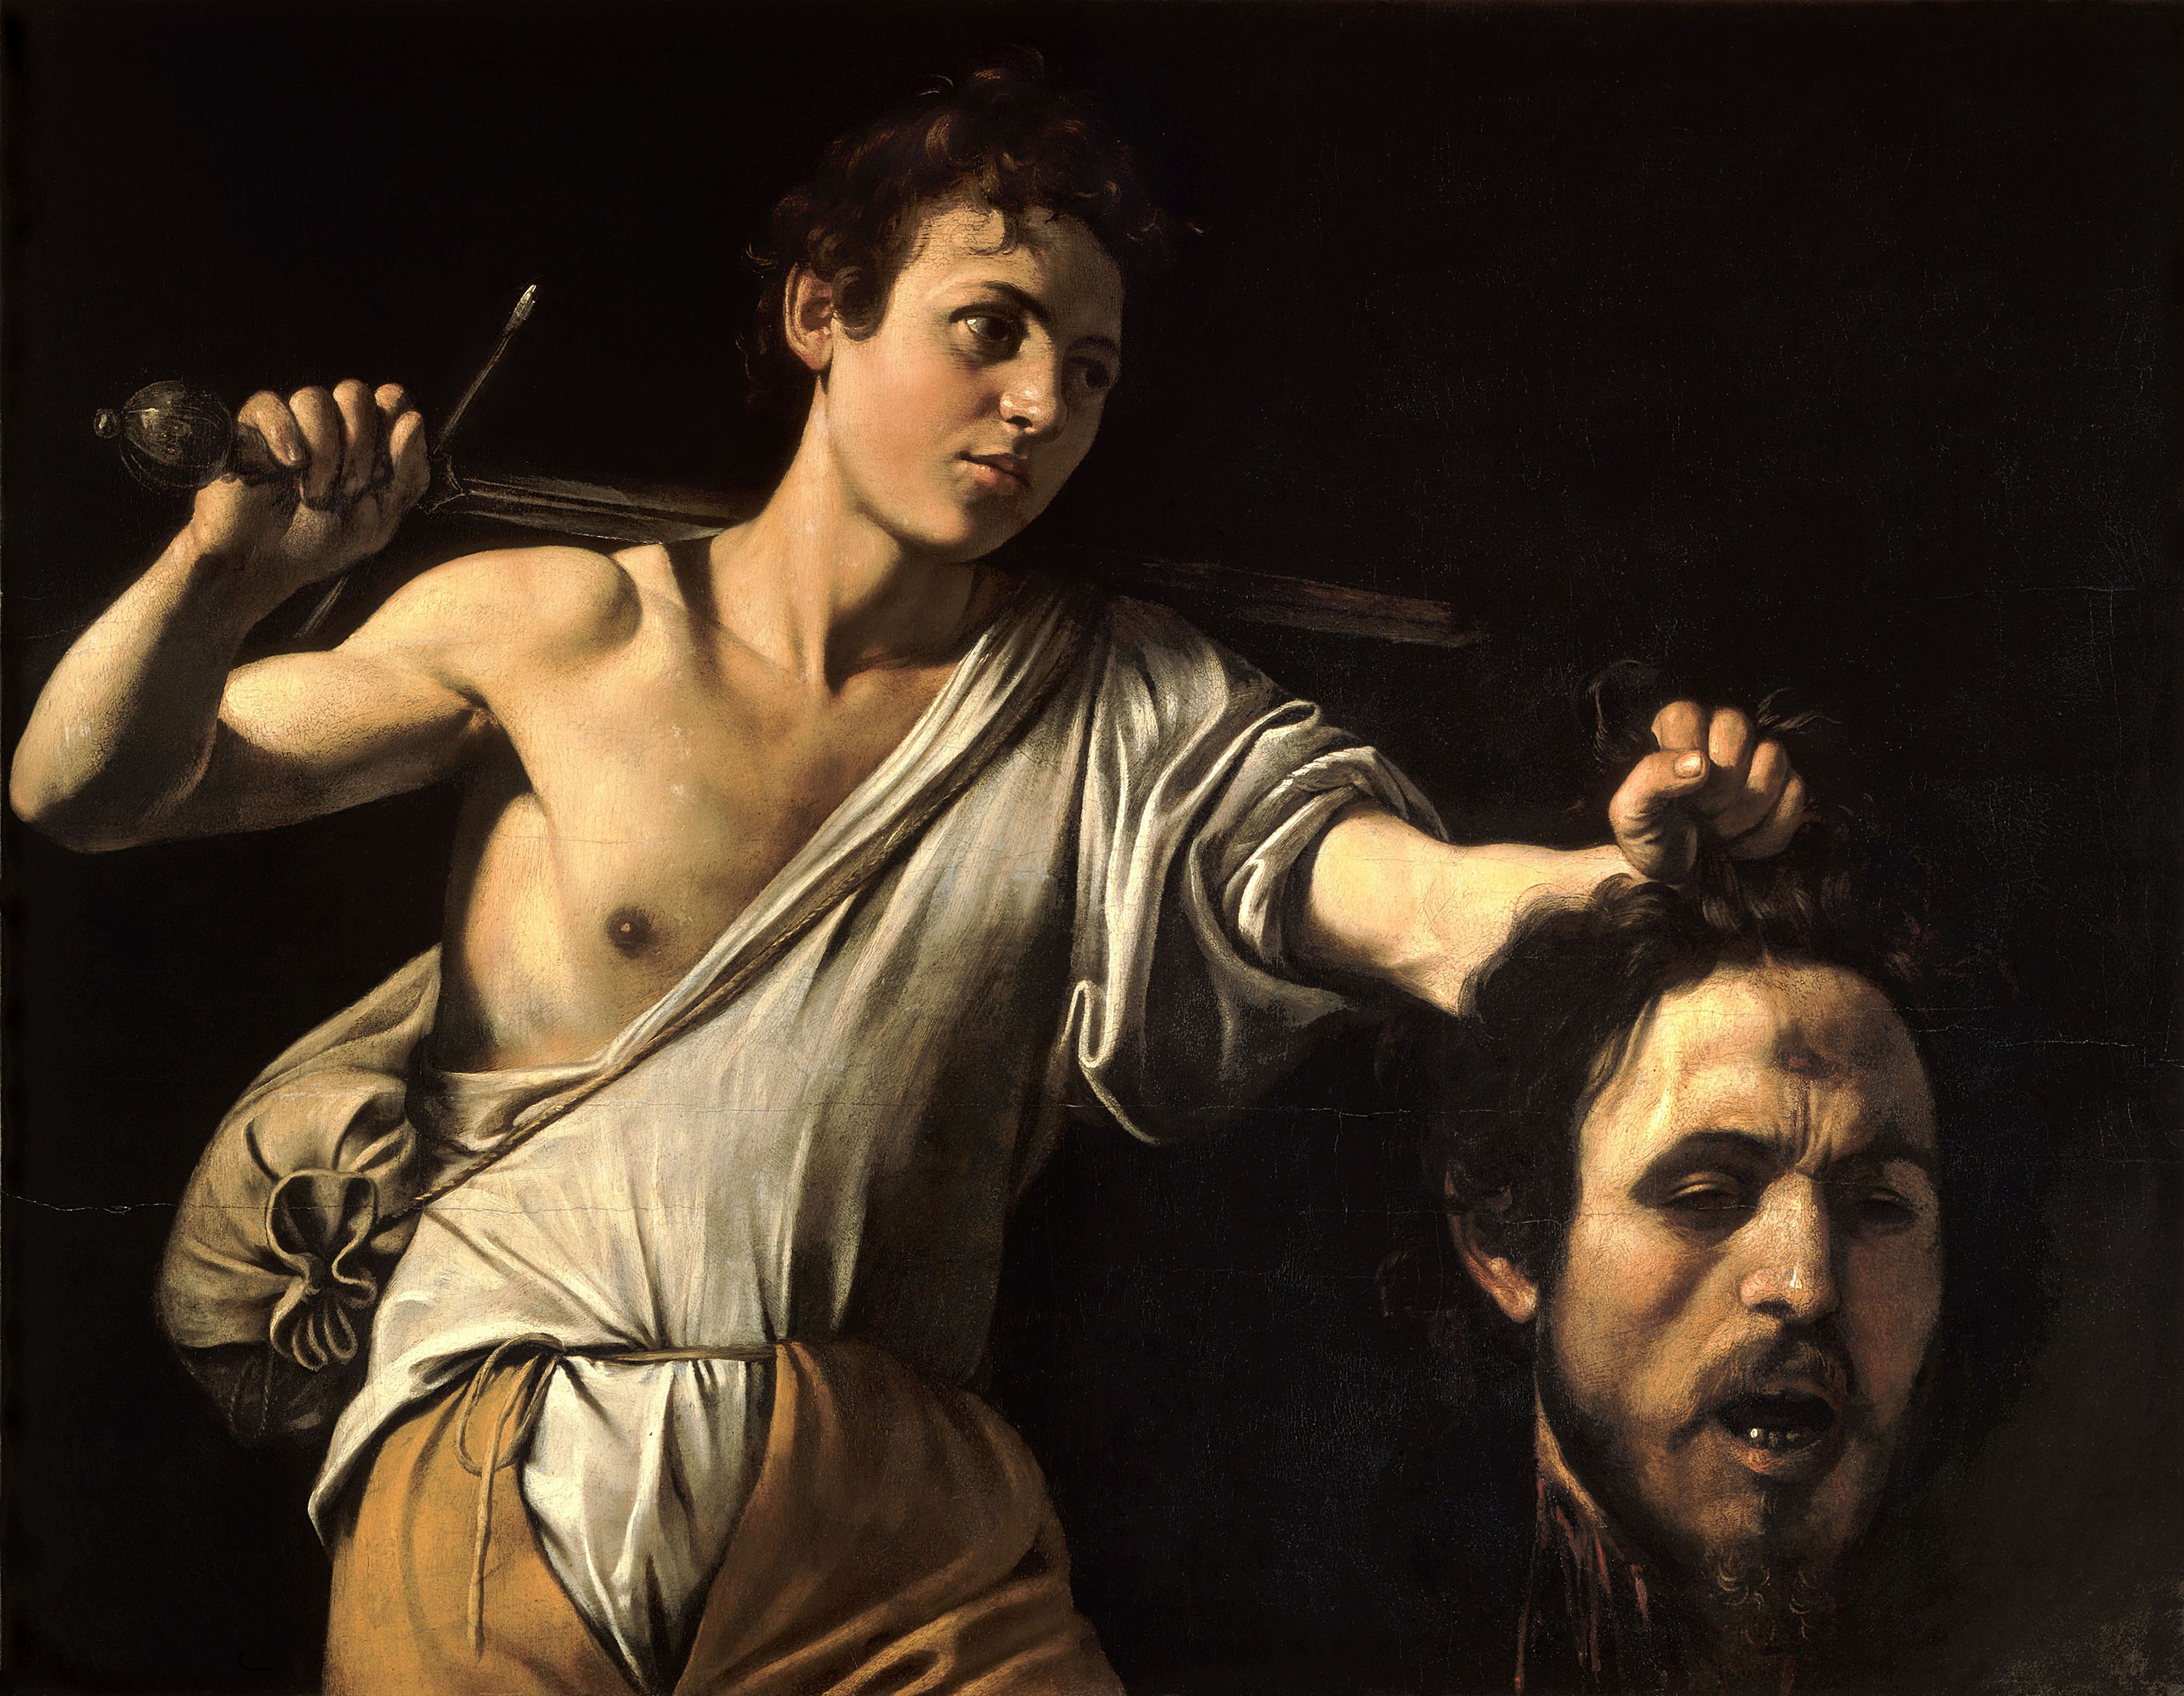 Микеланджело Меризи да Караваджо. "Давид с головой Голиафа".